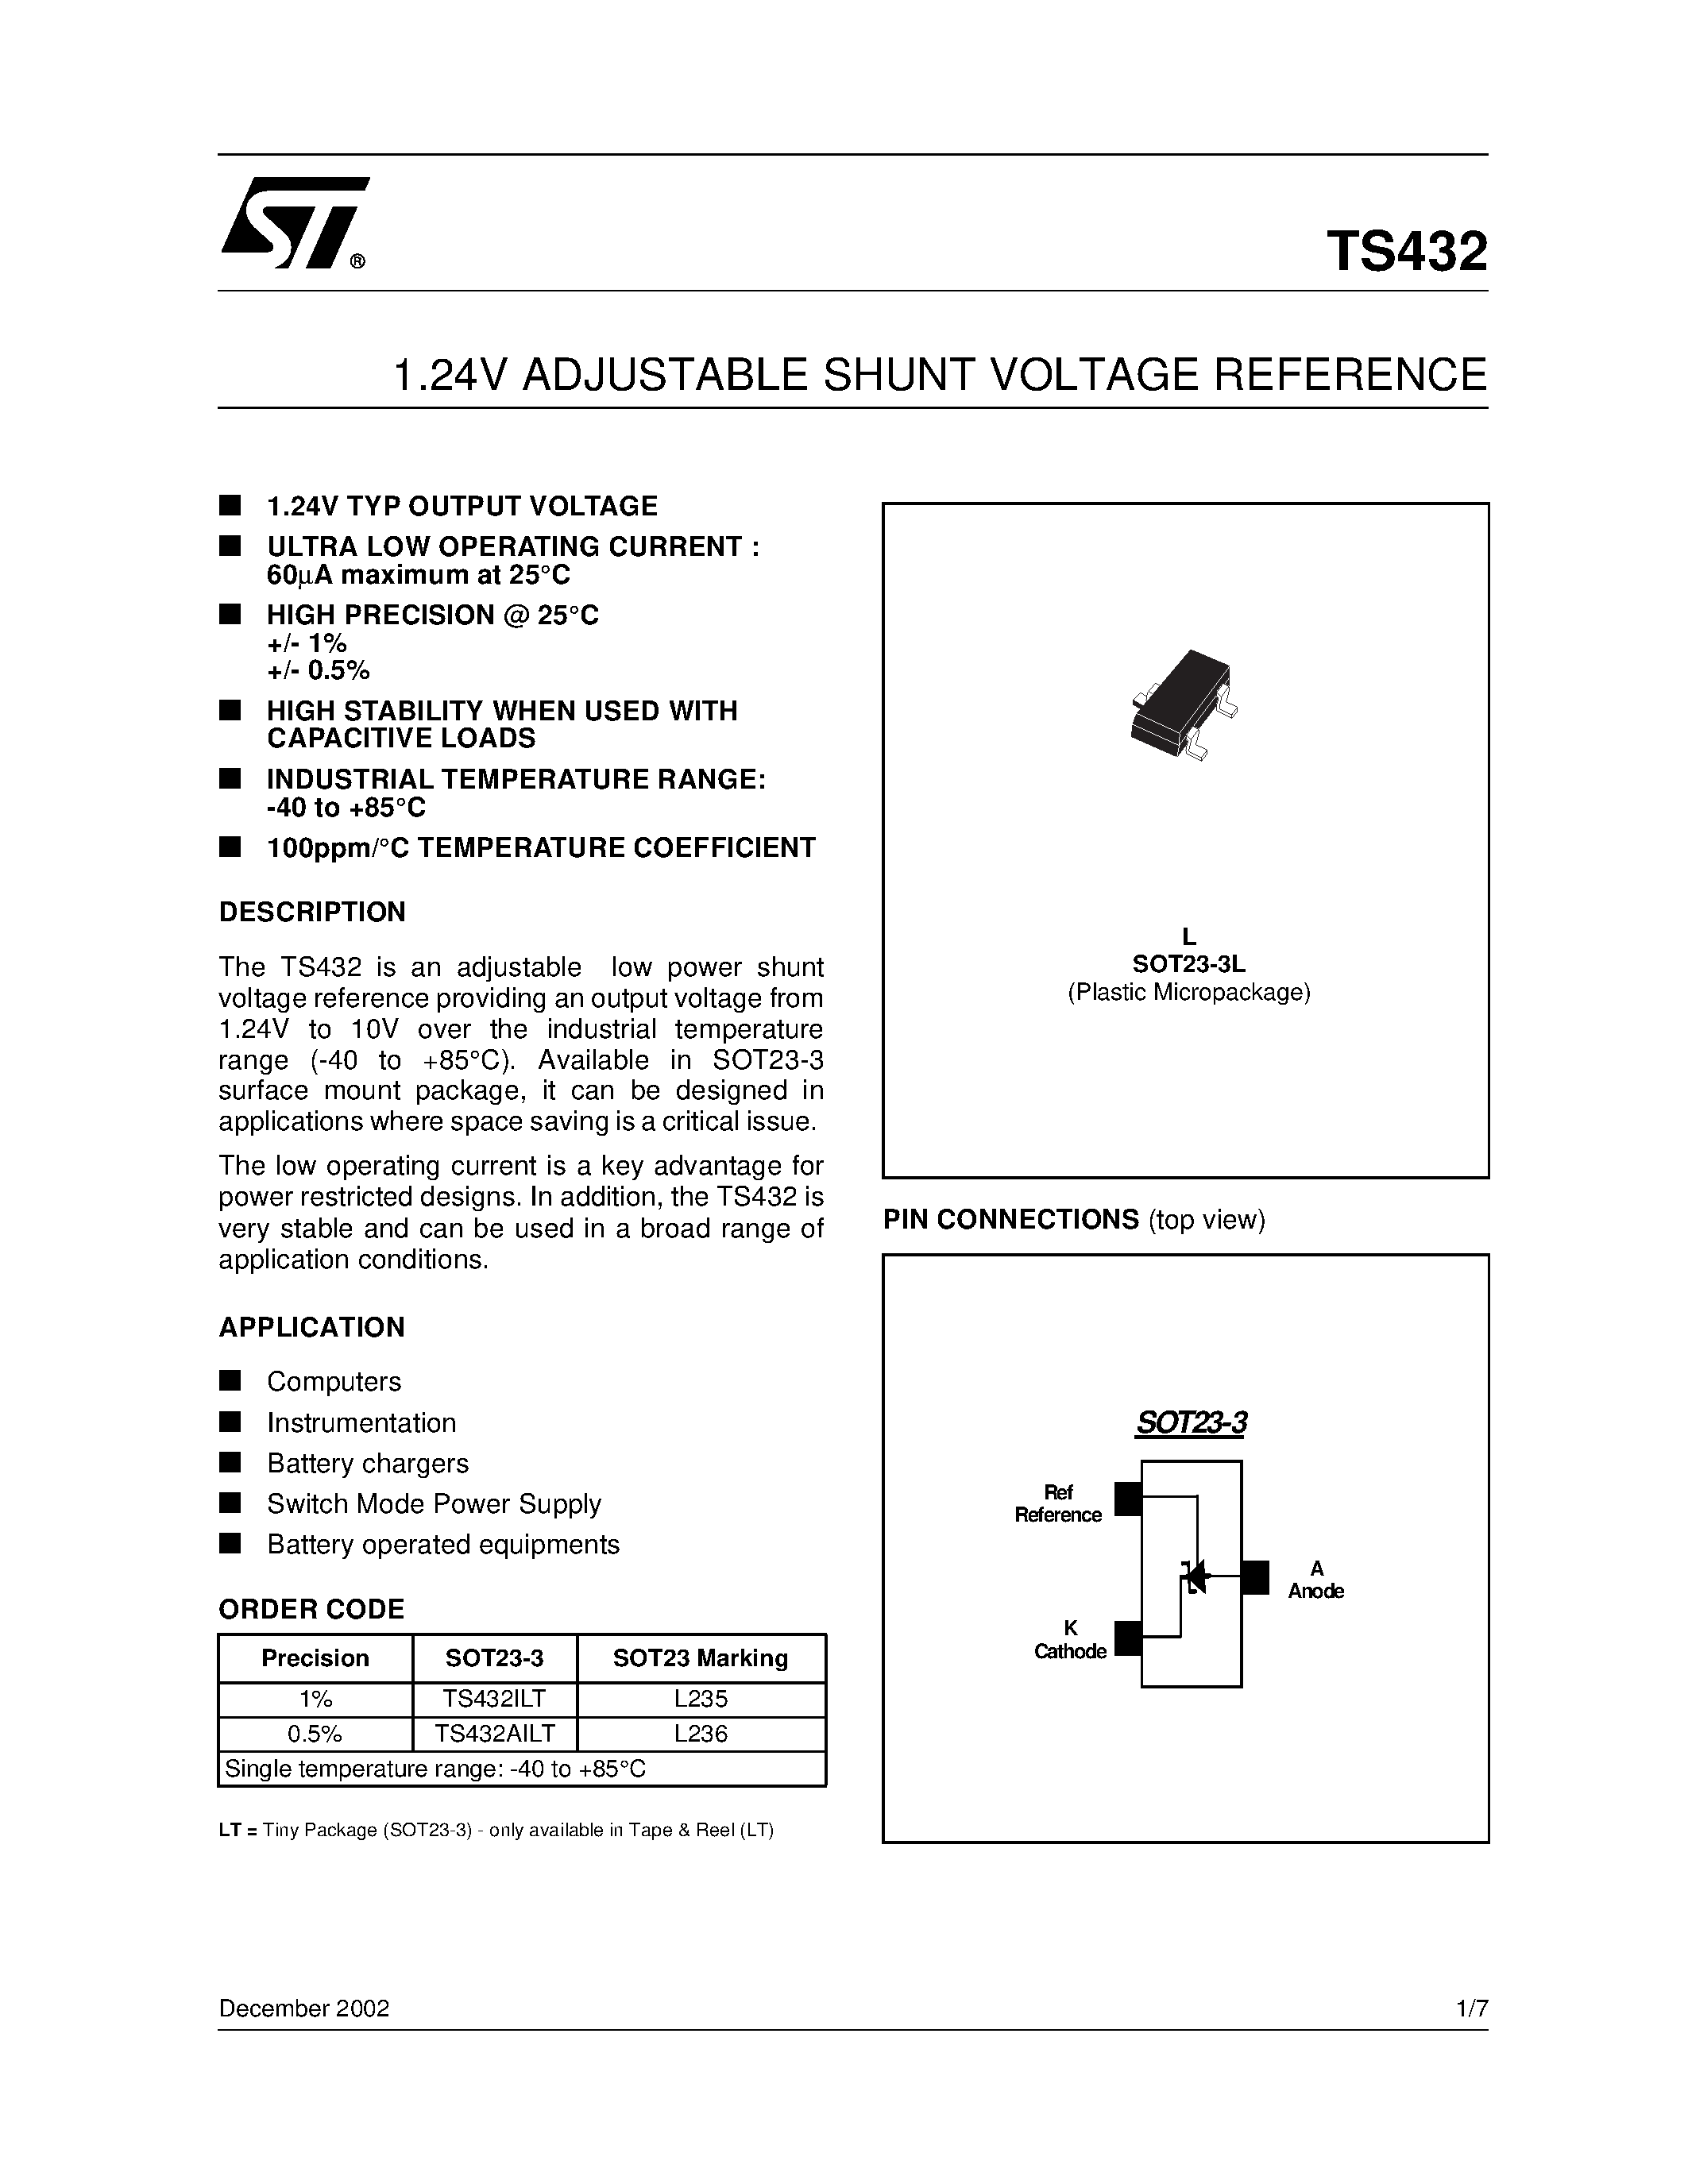 Datasheet TS432AILT - 1.24V ADJUSTABLE SHUNT VOLTAGE REFERENCE page 1